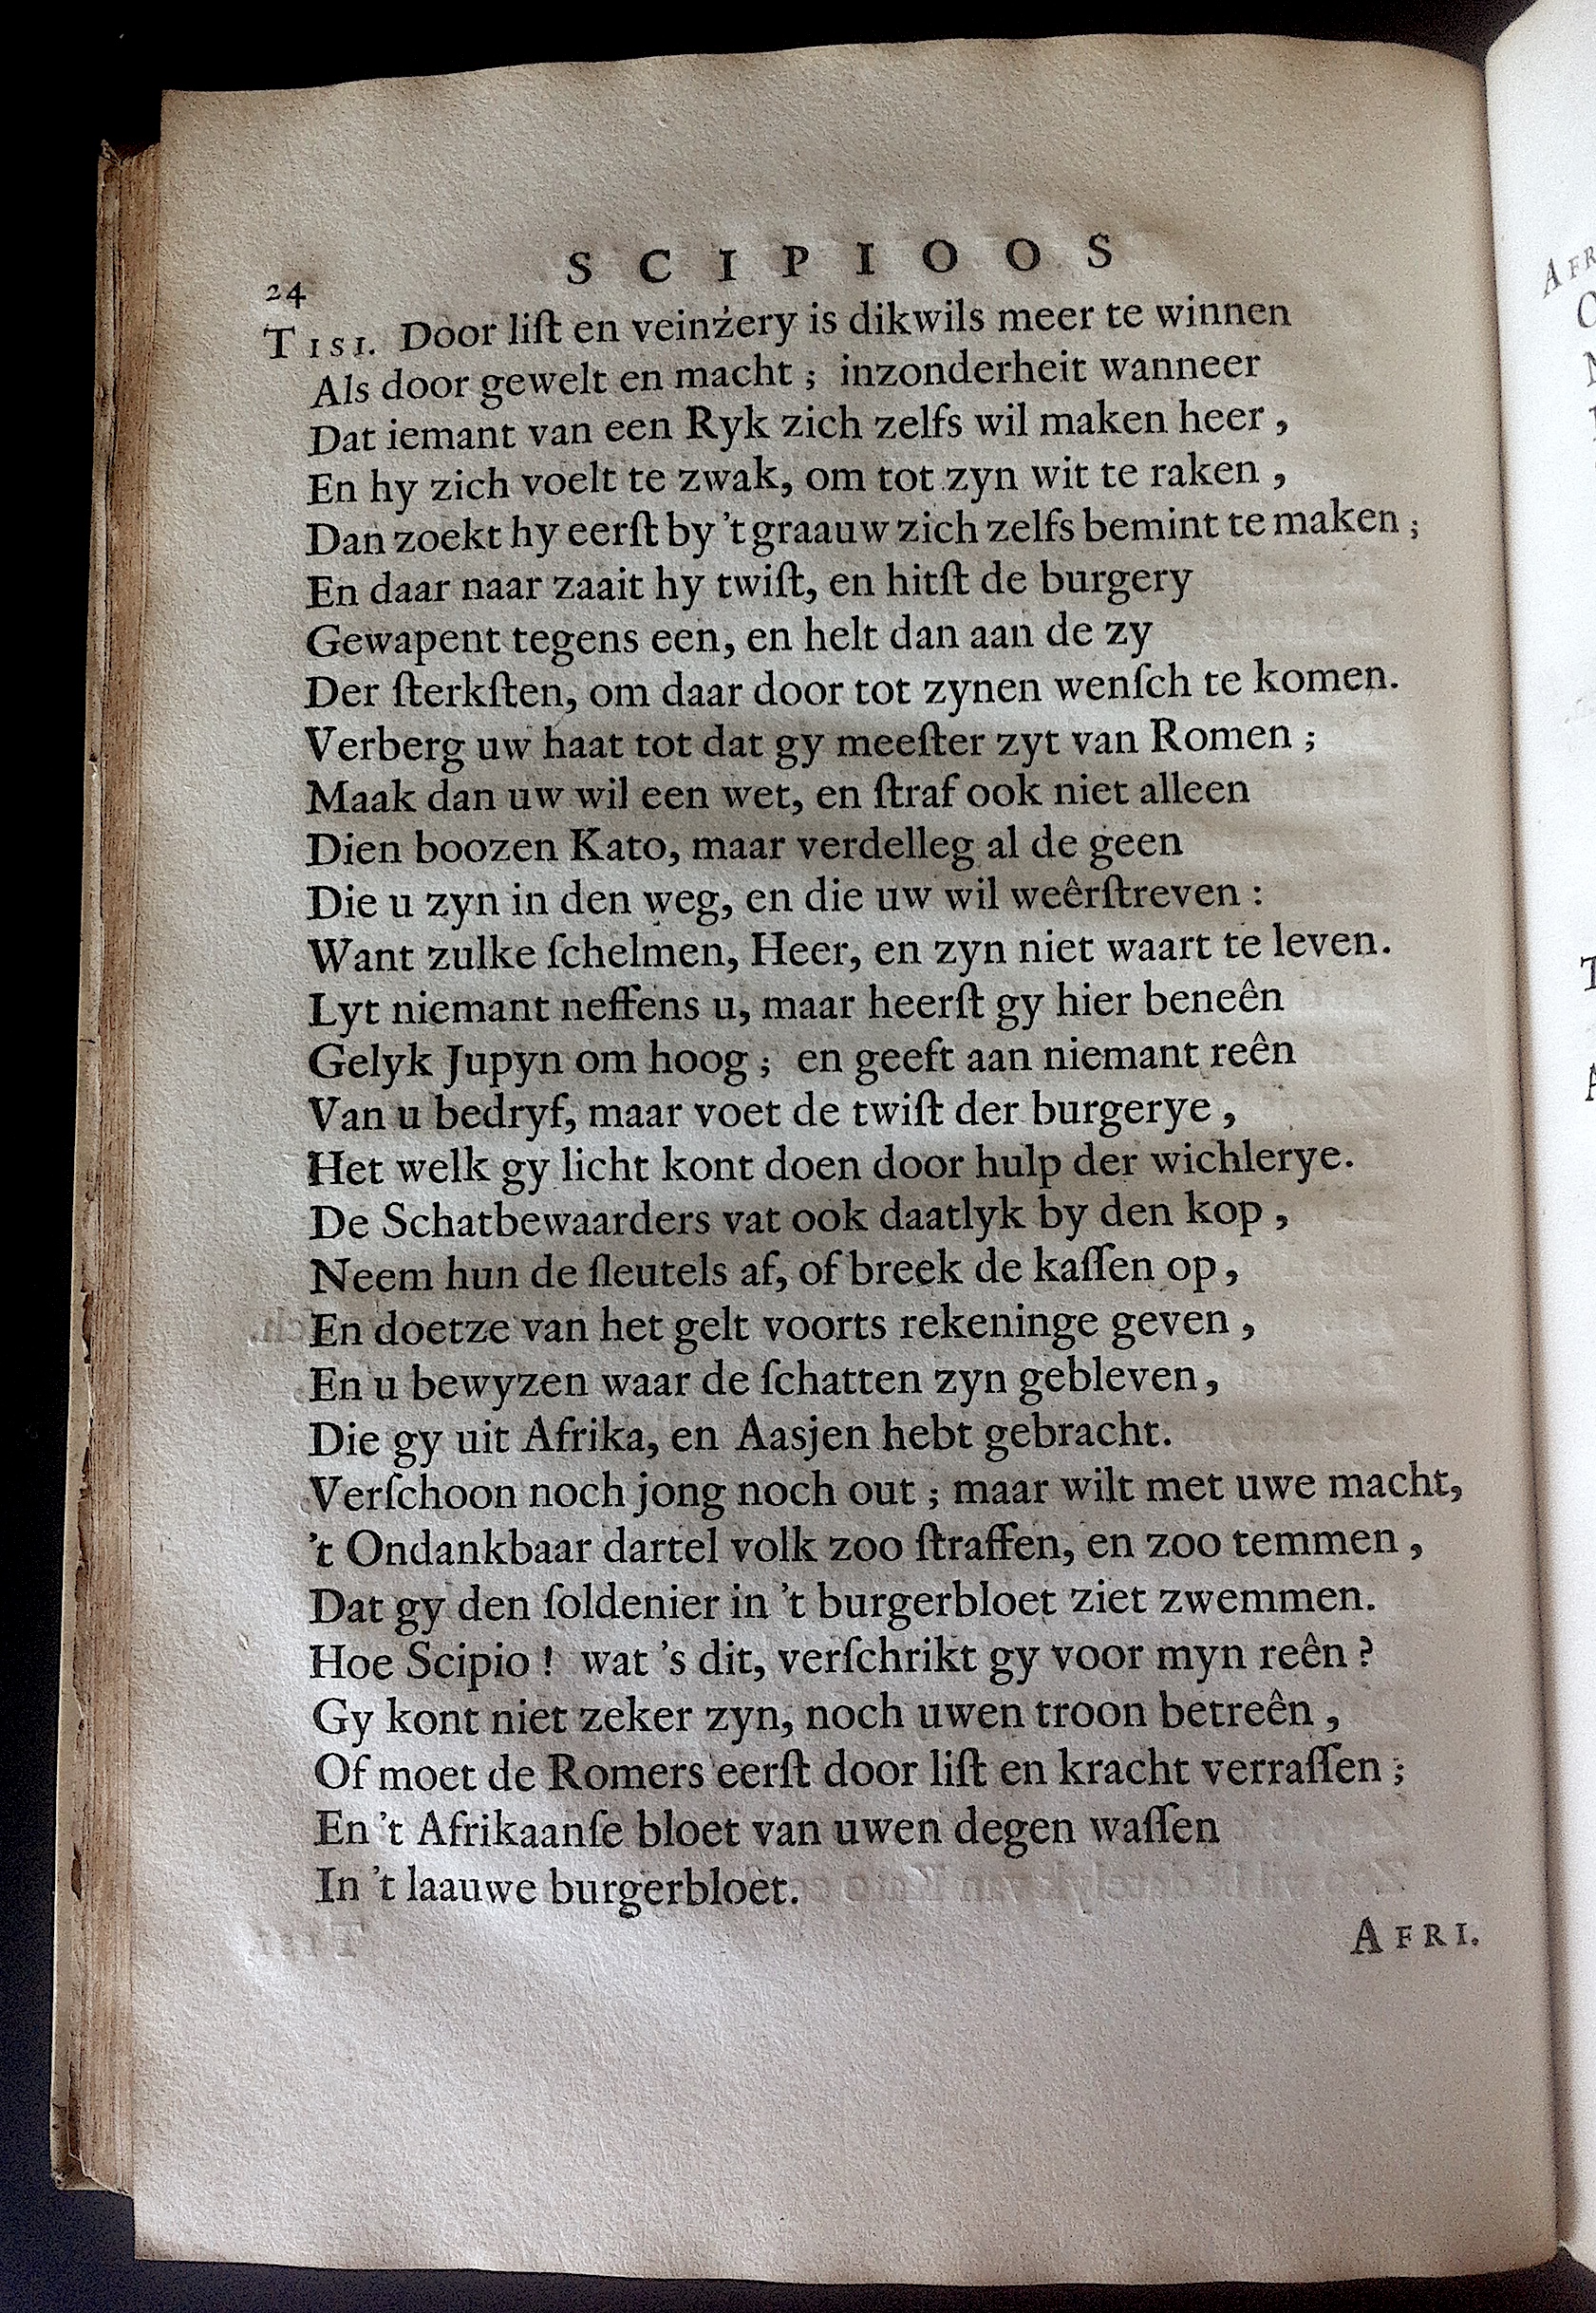 BoccardScipioFolio1658p24.jpg